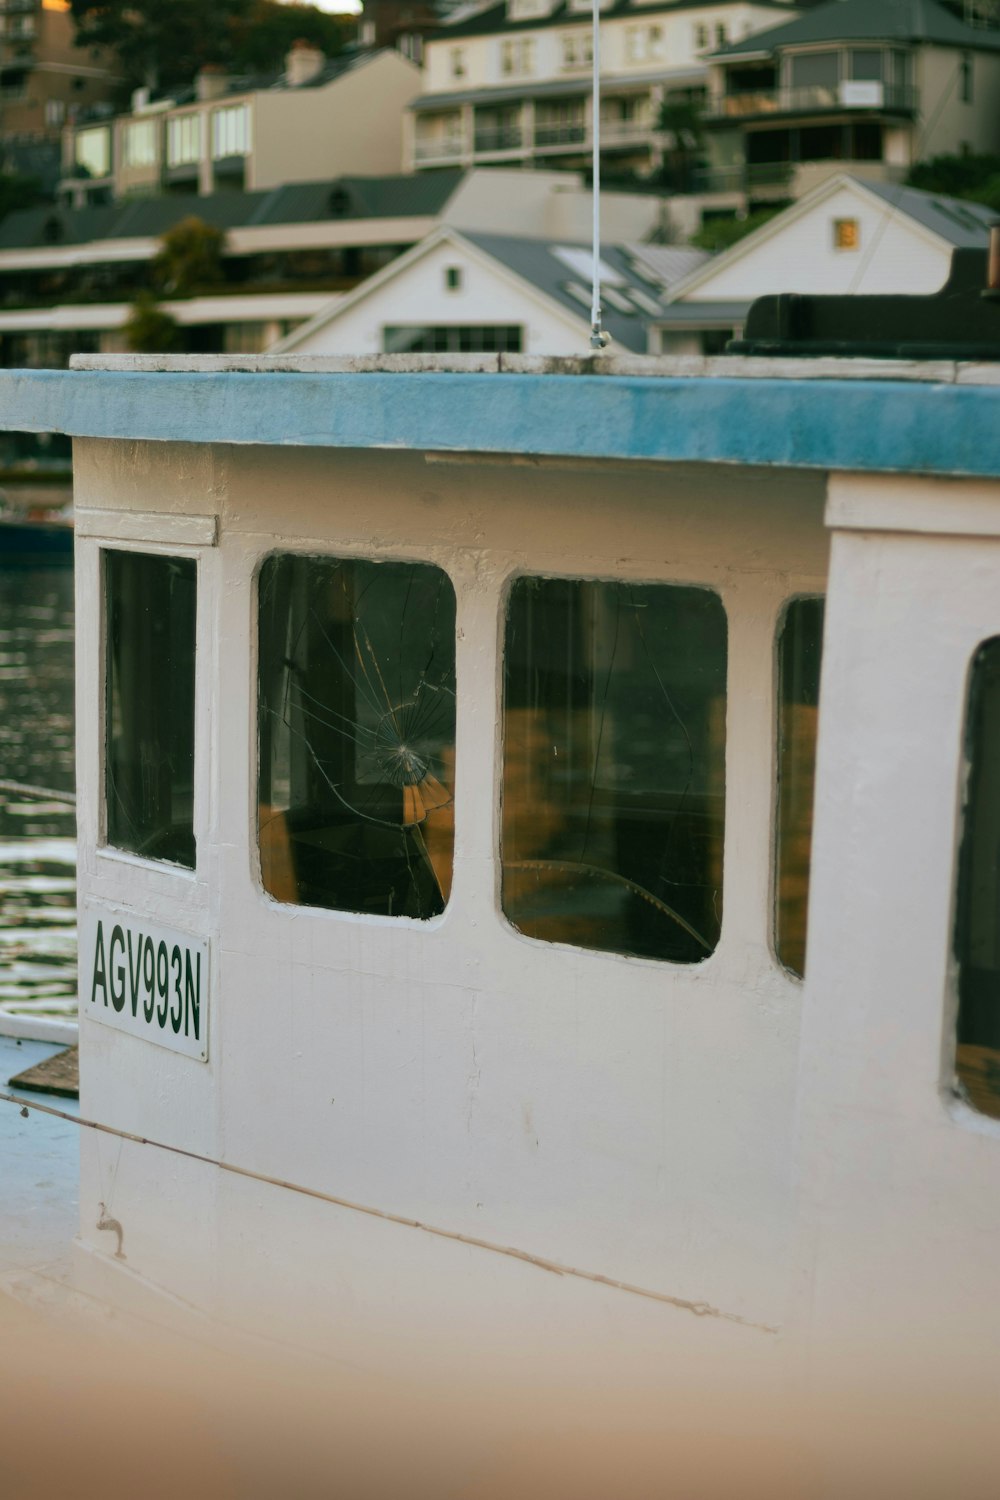 un cane è seduto nel finestrino di una barca